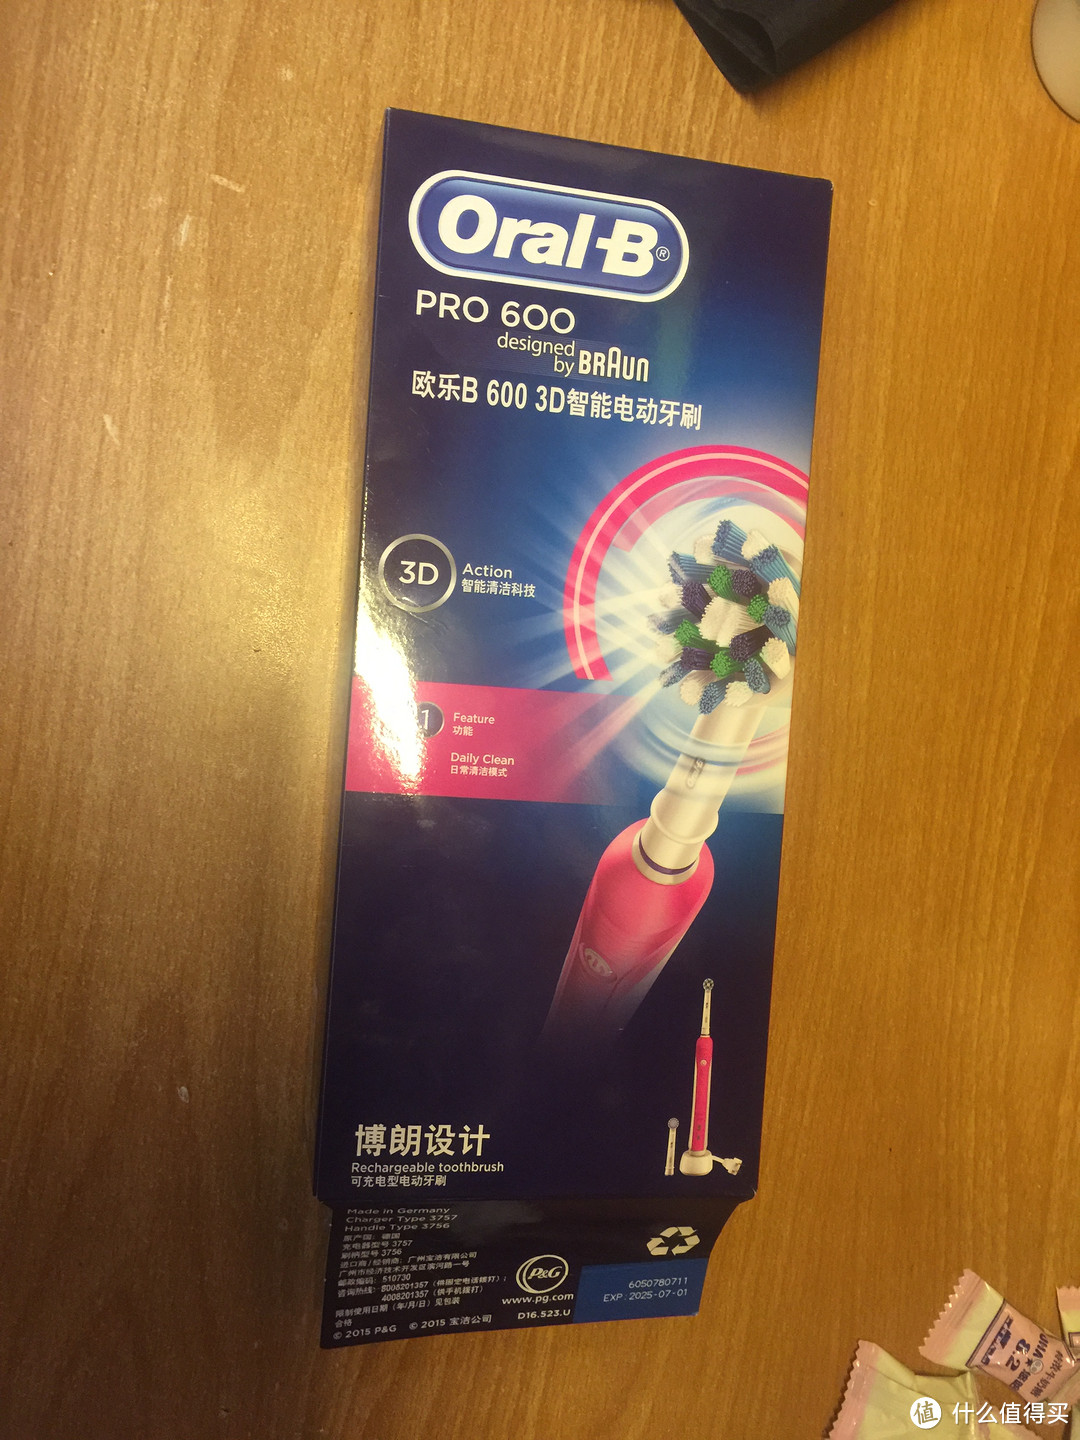 心心念念的电动牙刷——Braun 博朗 欧乐B Pro600